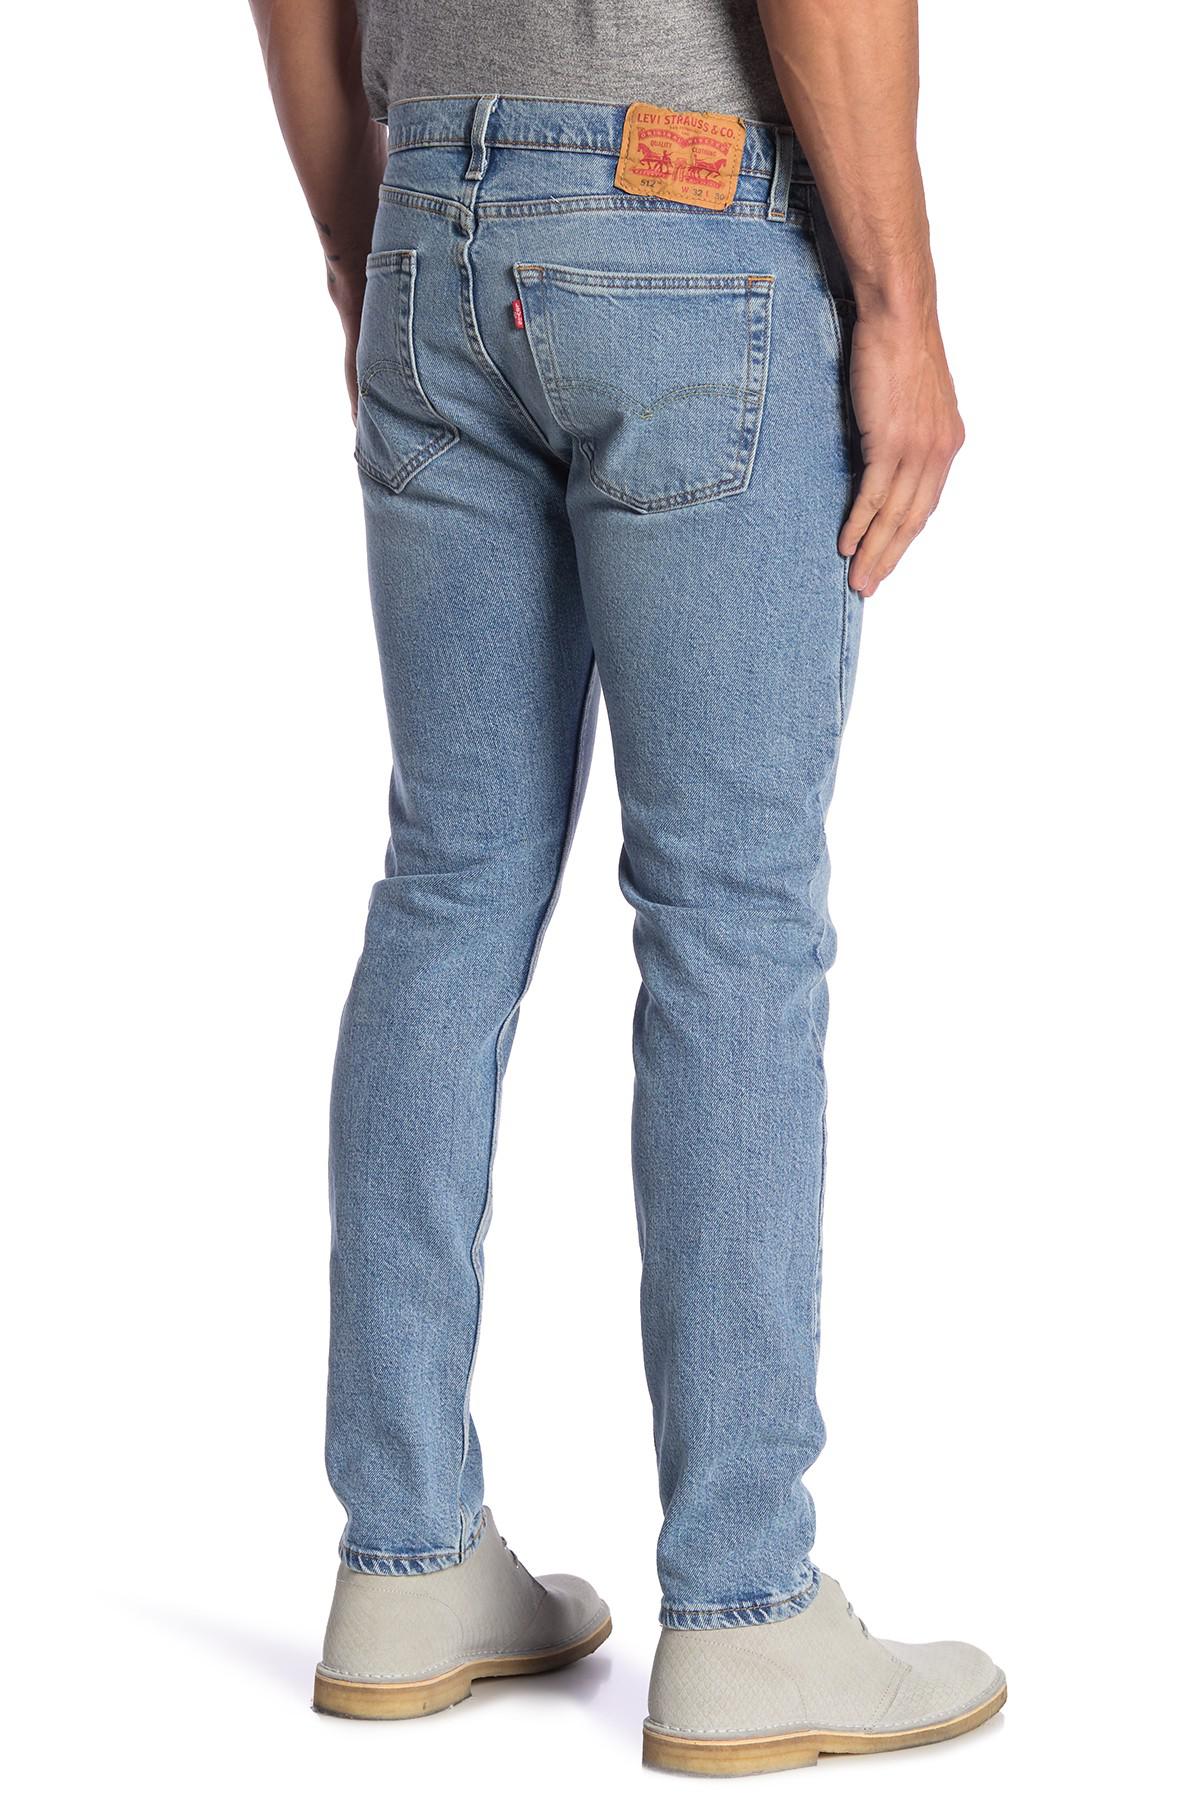 religion Rejsende købmand ensidigt Levi's Denim 512 Slim Taper Fit Jeans - 29-36" Inseam in Blue for Men - Lyst